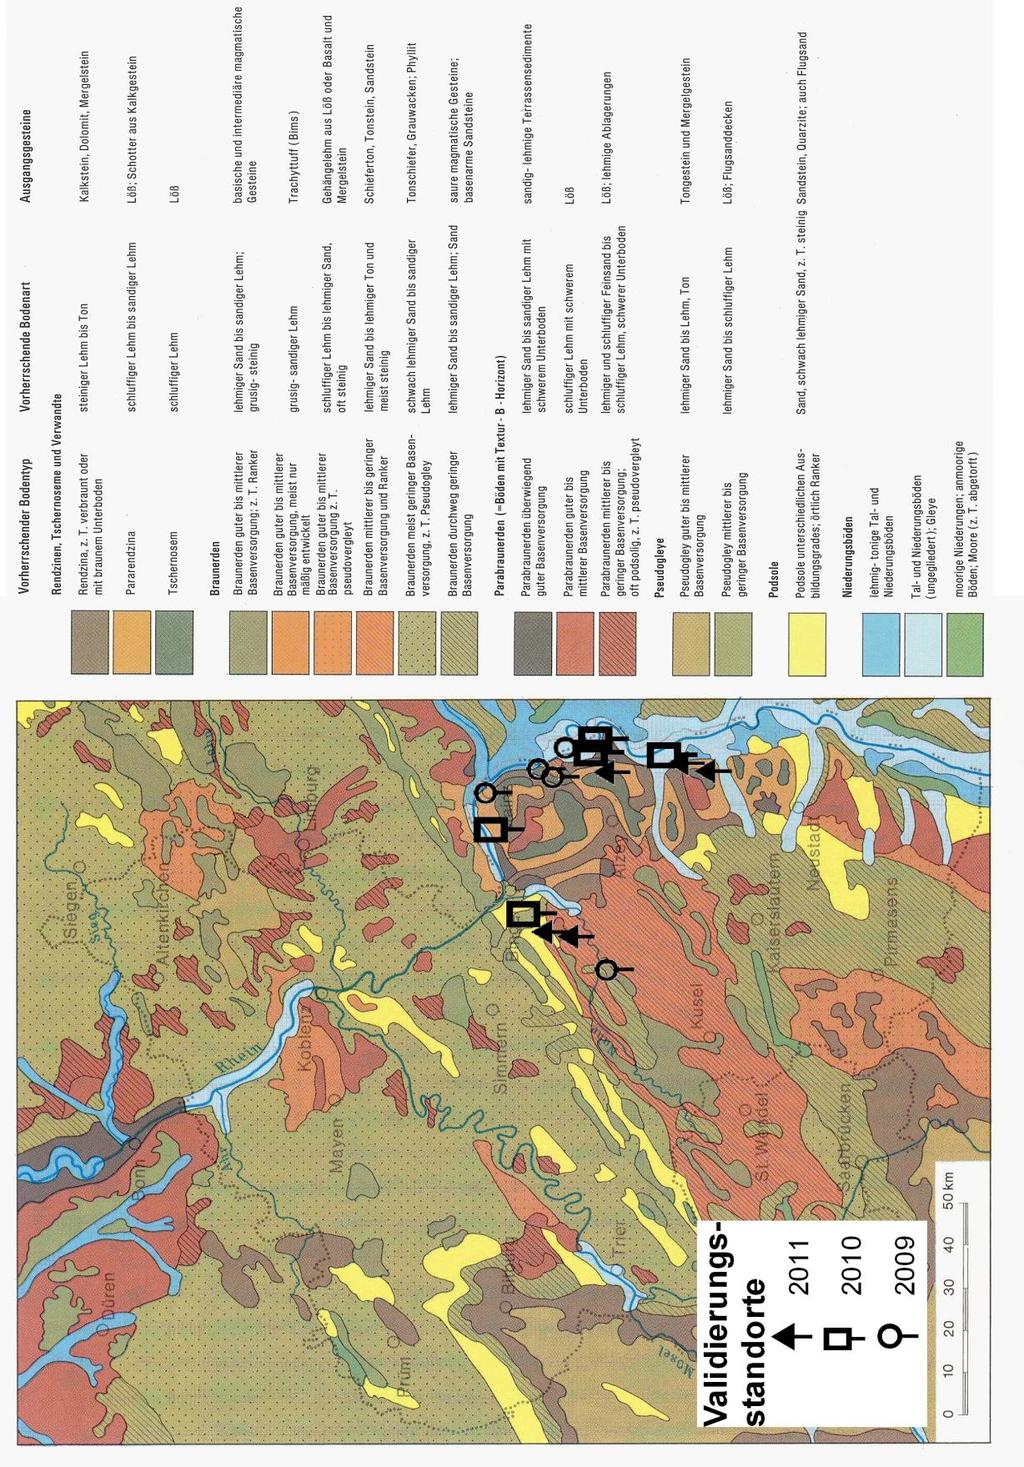 Bodenfeuchtesimulation 43 Abbildung 11: Lage der Validierungsstandorte in der Übersichtskarte der Böden des Rhein-Mosel-Raumes (Quelle: Abbildung FISCHER 11: Lage (1989) der nach